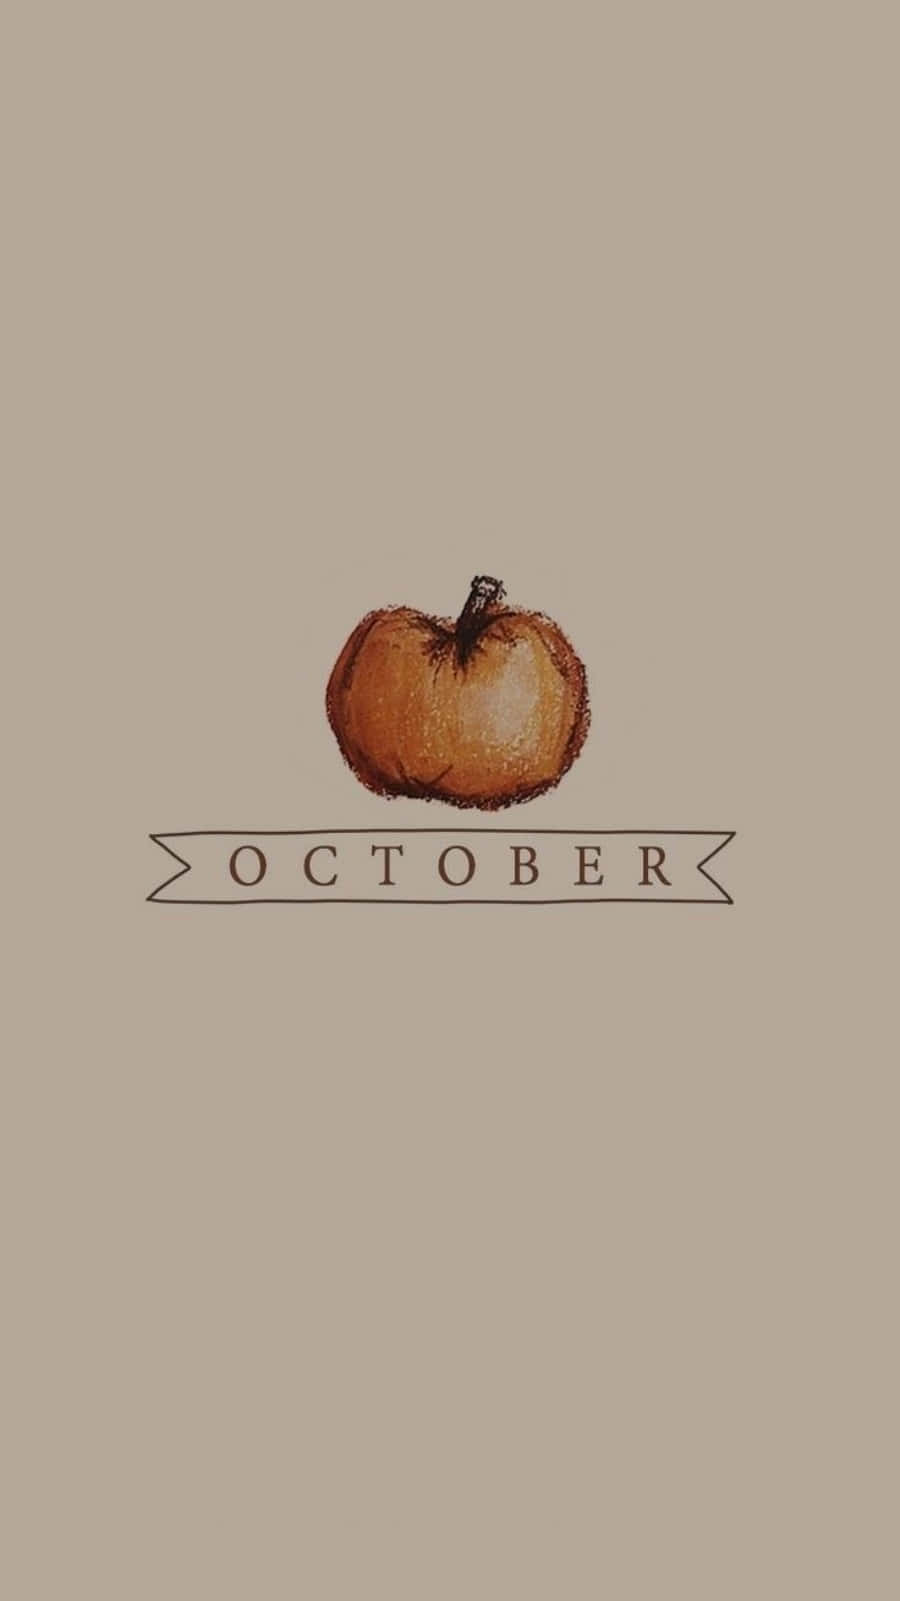 October Calendar  October wallpaper October calendar Fall wallpaper